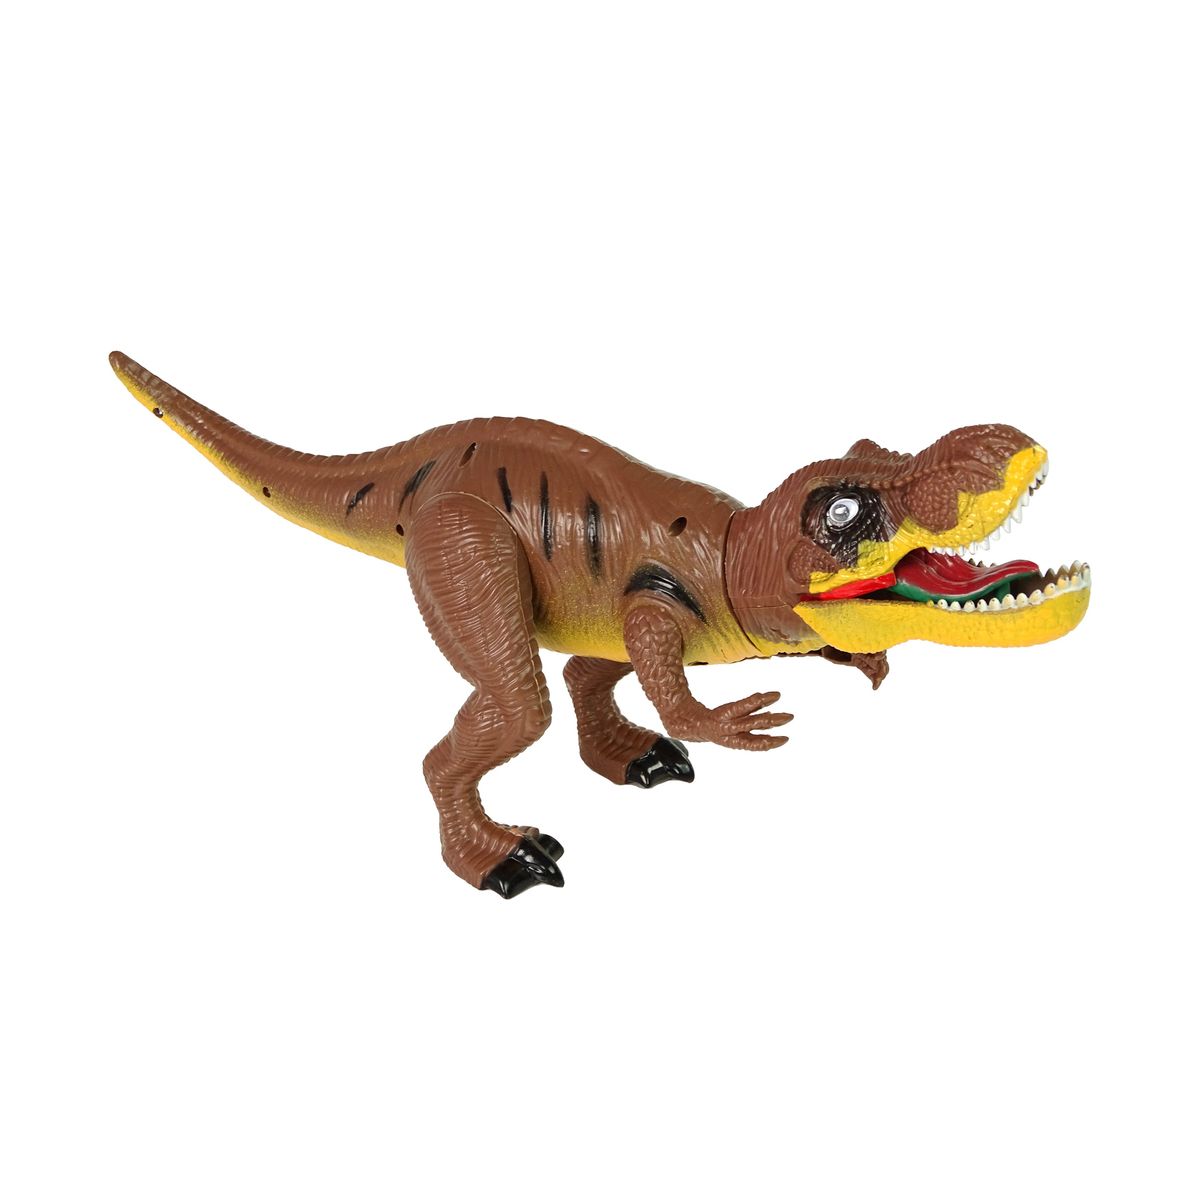 Figurka Lean Zestaw Dinozaurów Tyranozaur Rex Drzewka Akcesoria Dźwięk Światła (9720)